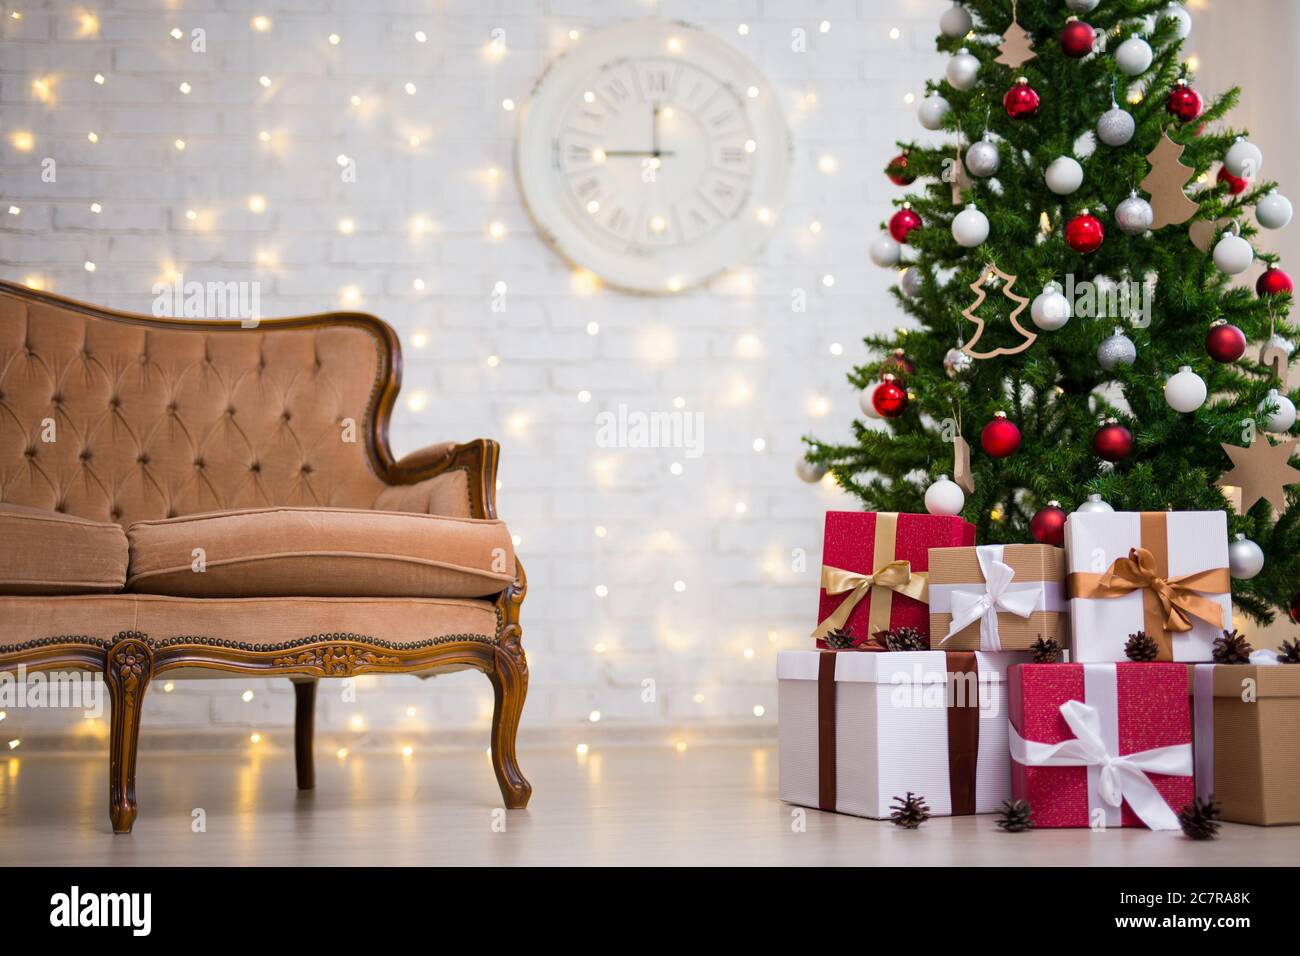 Bạn muốn tìm kiếm hình nền phòng khách Giáng sinh đầy tươi vui và rực rỡ? Với cây thông trang trí vô cùng đáng yêu, hình nền này sẽ khiến bạn bị cuốn hút ngay từ cái nhìn đầu tiên. Hãy cài đặt hình nền này vào thiết bị của mình và thưởng thức không gian phòng khách Giáng sinh đầy ấn tượng.